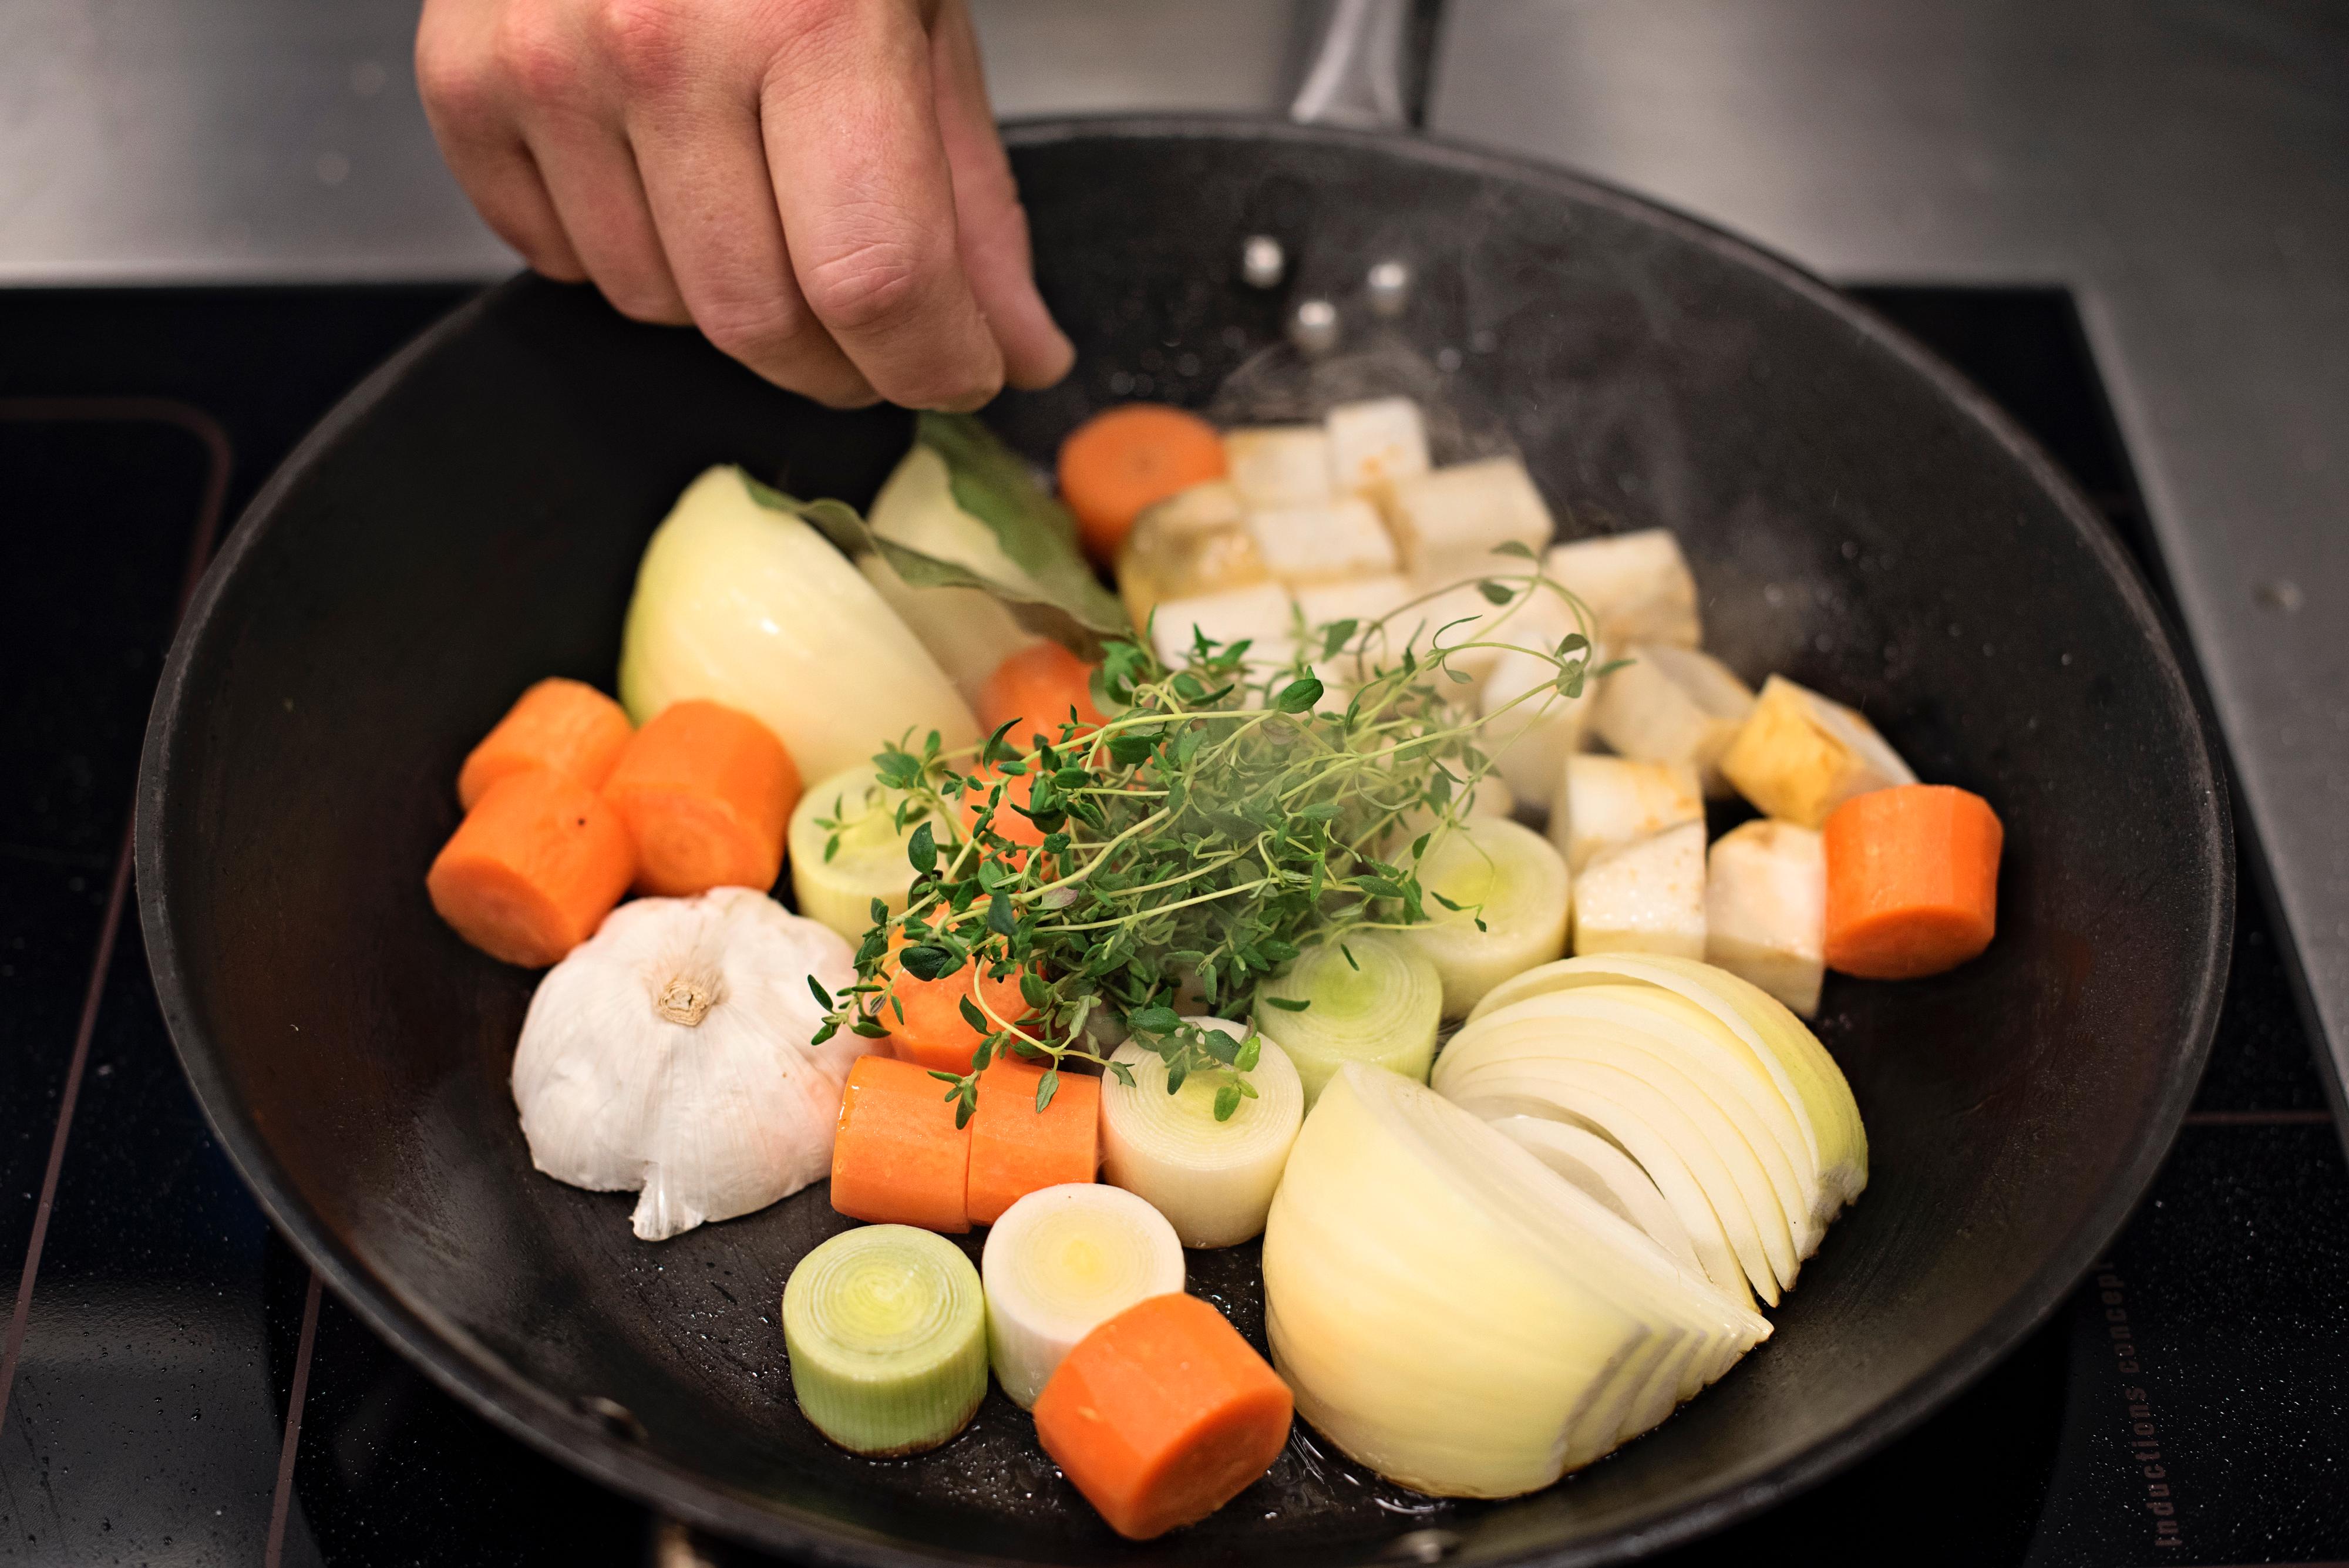 Stek alle grønnsakene i en stekepanne og ha dem i en romslig gryte sammen med beina. Kok ut stekepannen med litt av vannet og ha det over på stekebrettet/den ildfaste formen. Sørg for å få med så mye farge og smak som mulig fra brettet/formen og ha det i gryta.